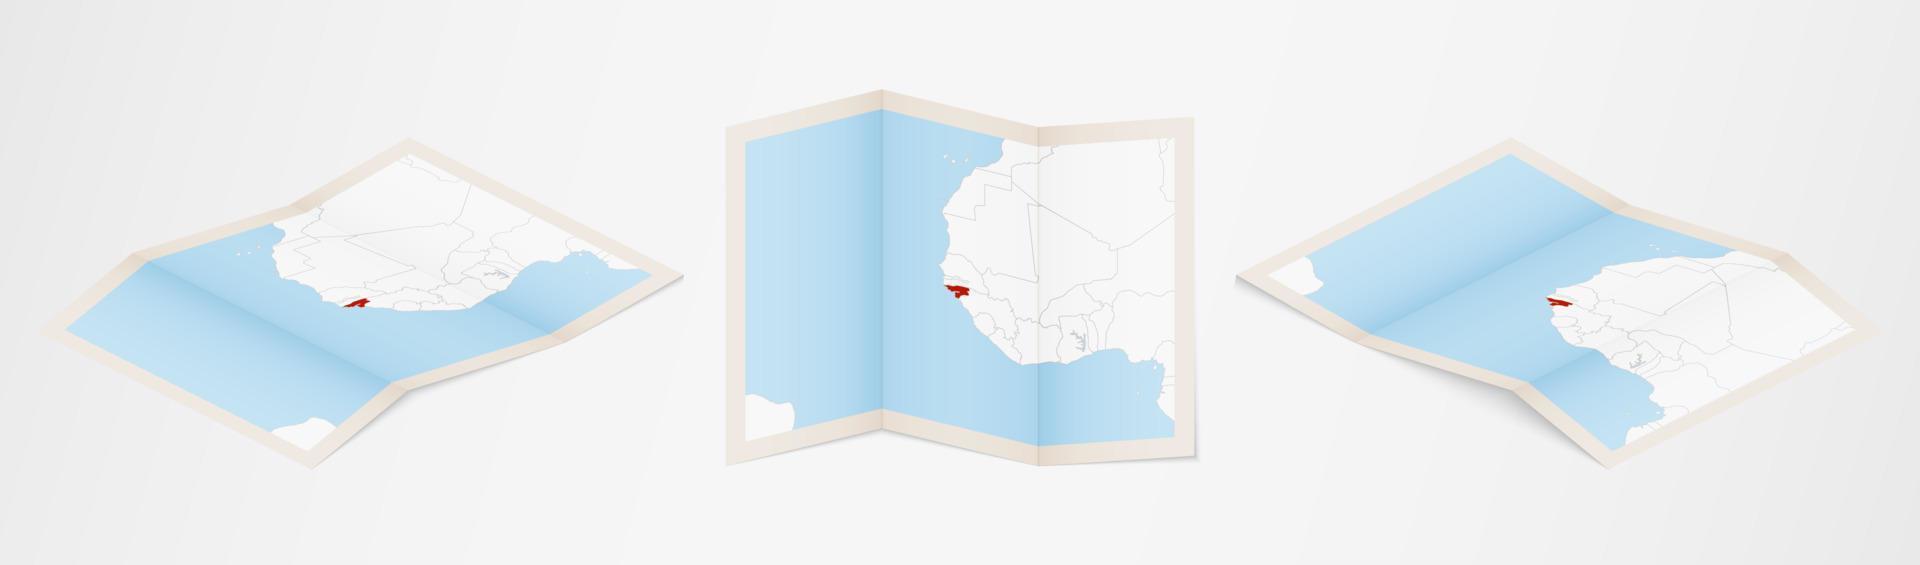 Faltkarte von Guinea-Bissau in drei verschiedenen Versionen. vektor